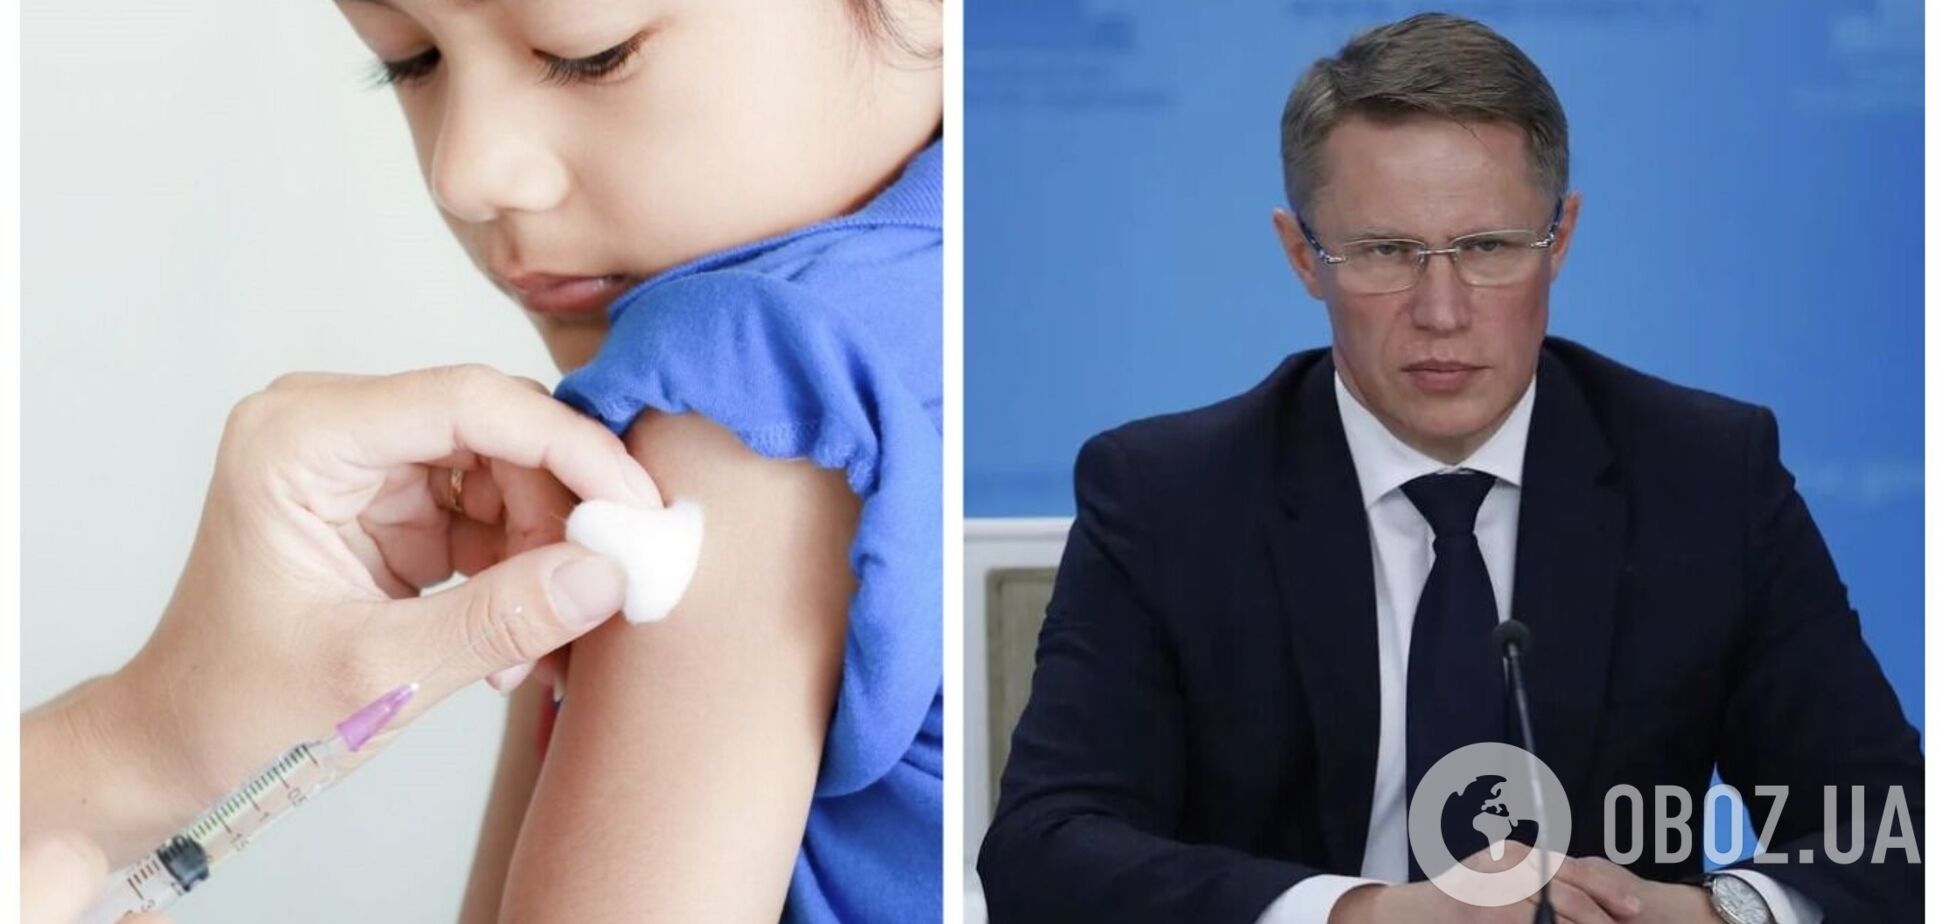 Россия могла испытать новое лекарство на украинских детях с оккупированных территорий: СМИ раскрыли подробности